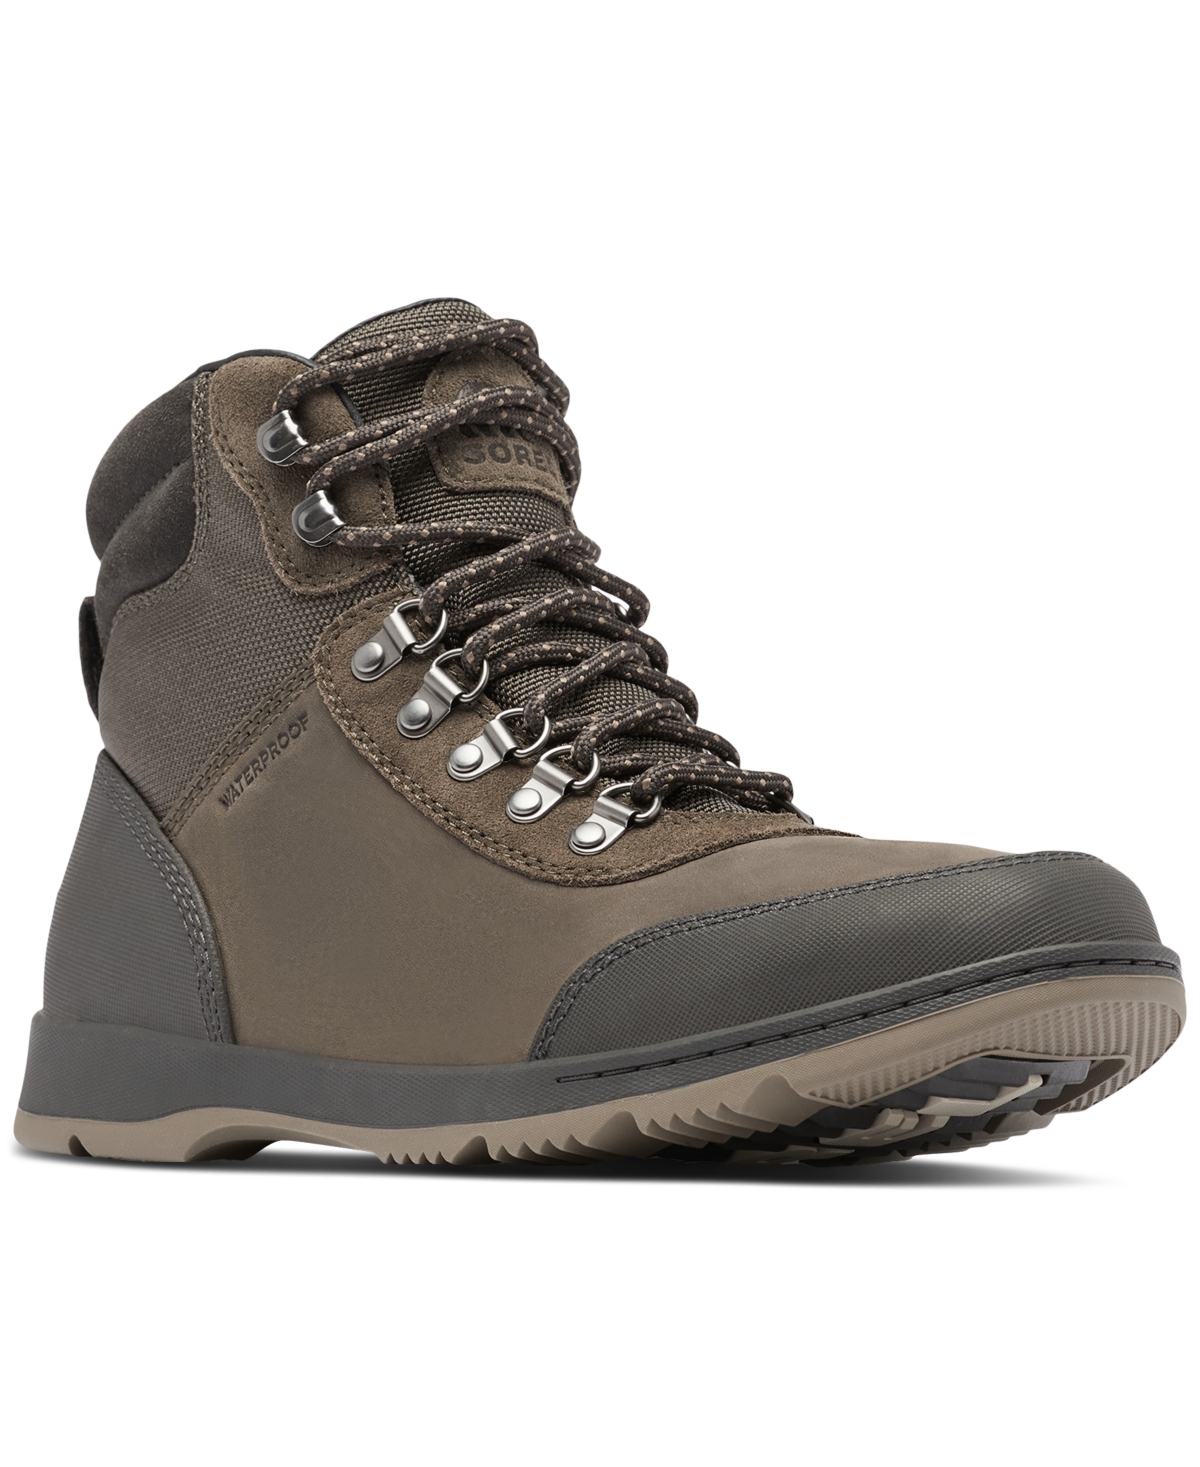 Men's Ankeny Ii Hiker Weatherproof Boots - Major, Wet Sand